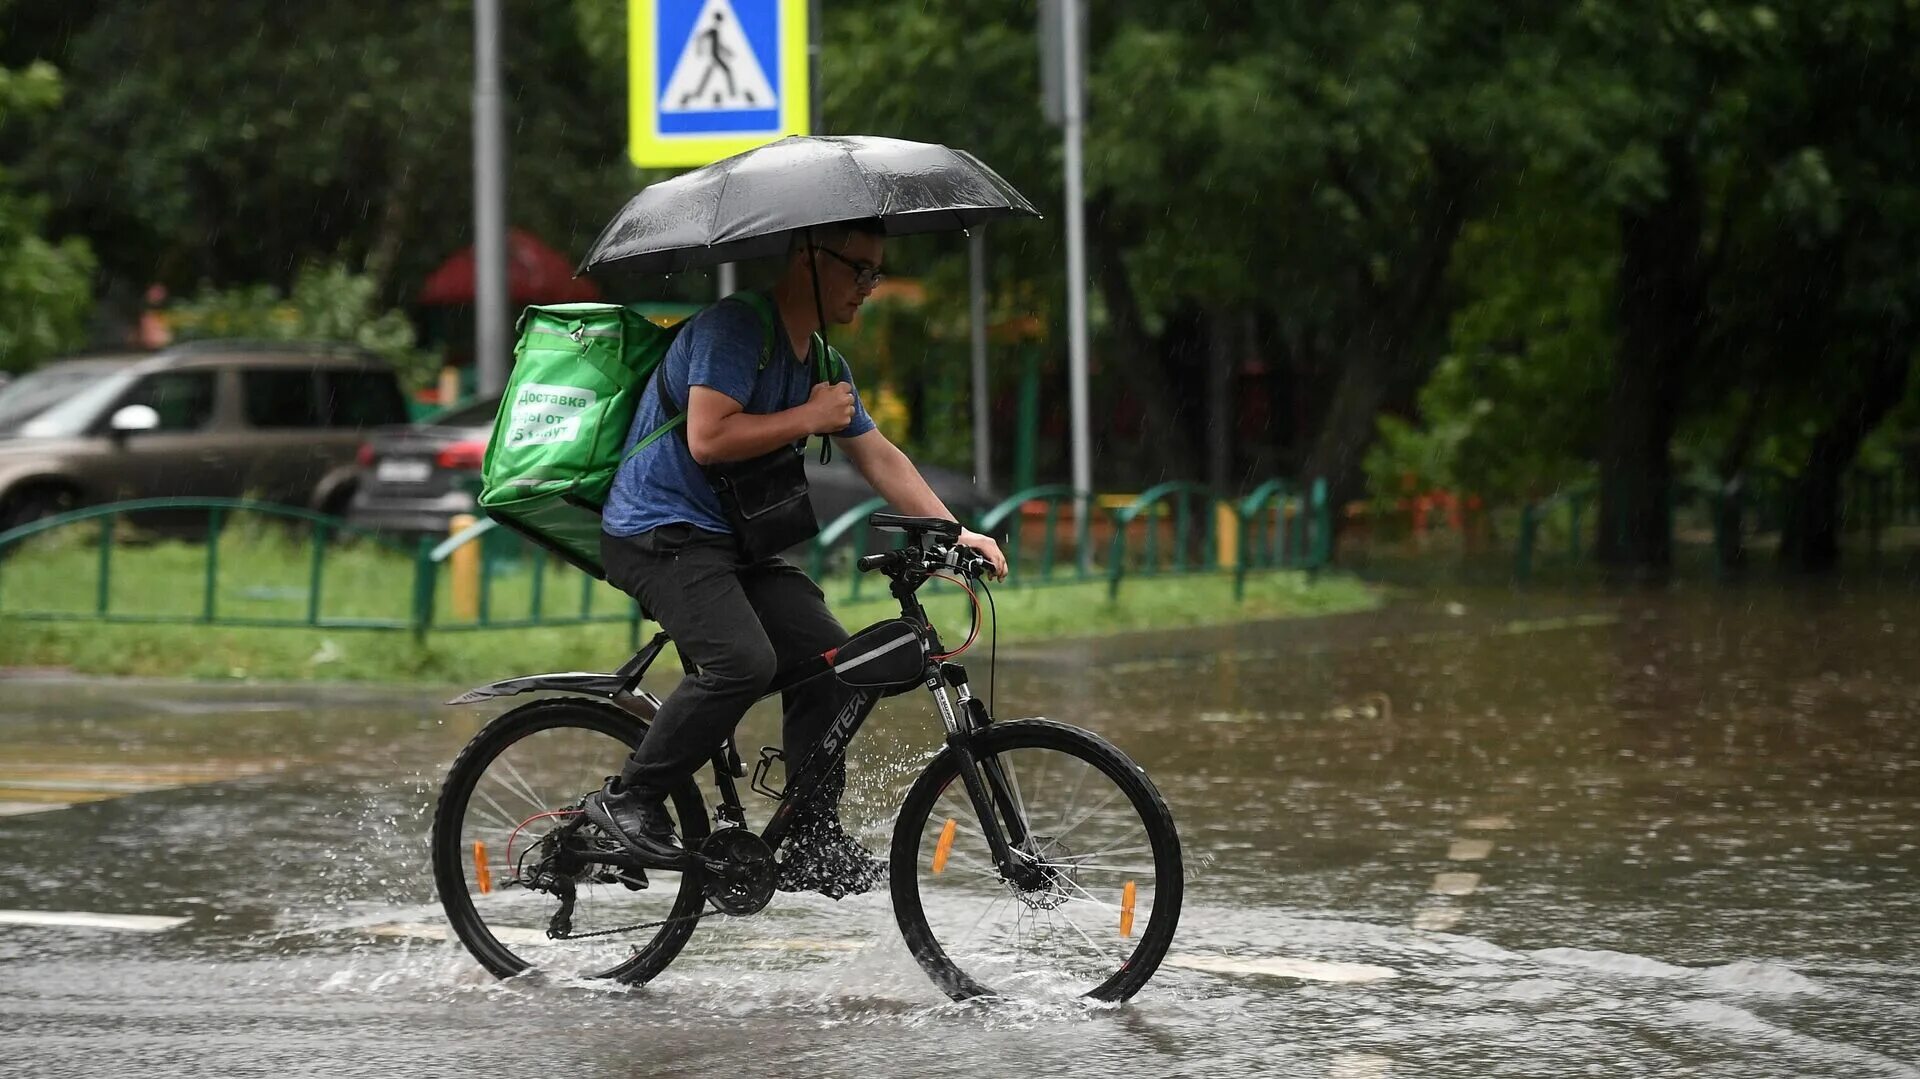 Велосипед дождь. Курьер на велосипеде в дождь. Велосипедист под дождем. Велосипед ливень.